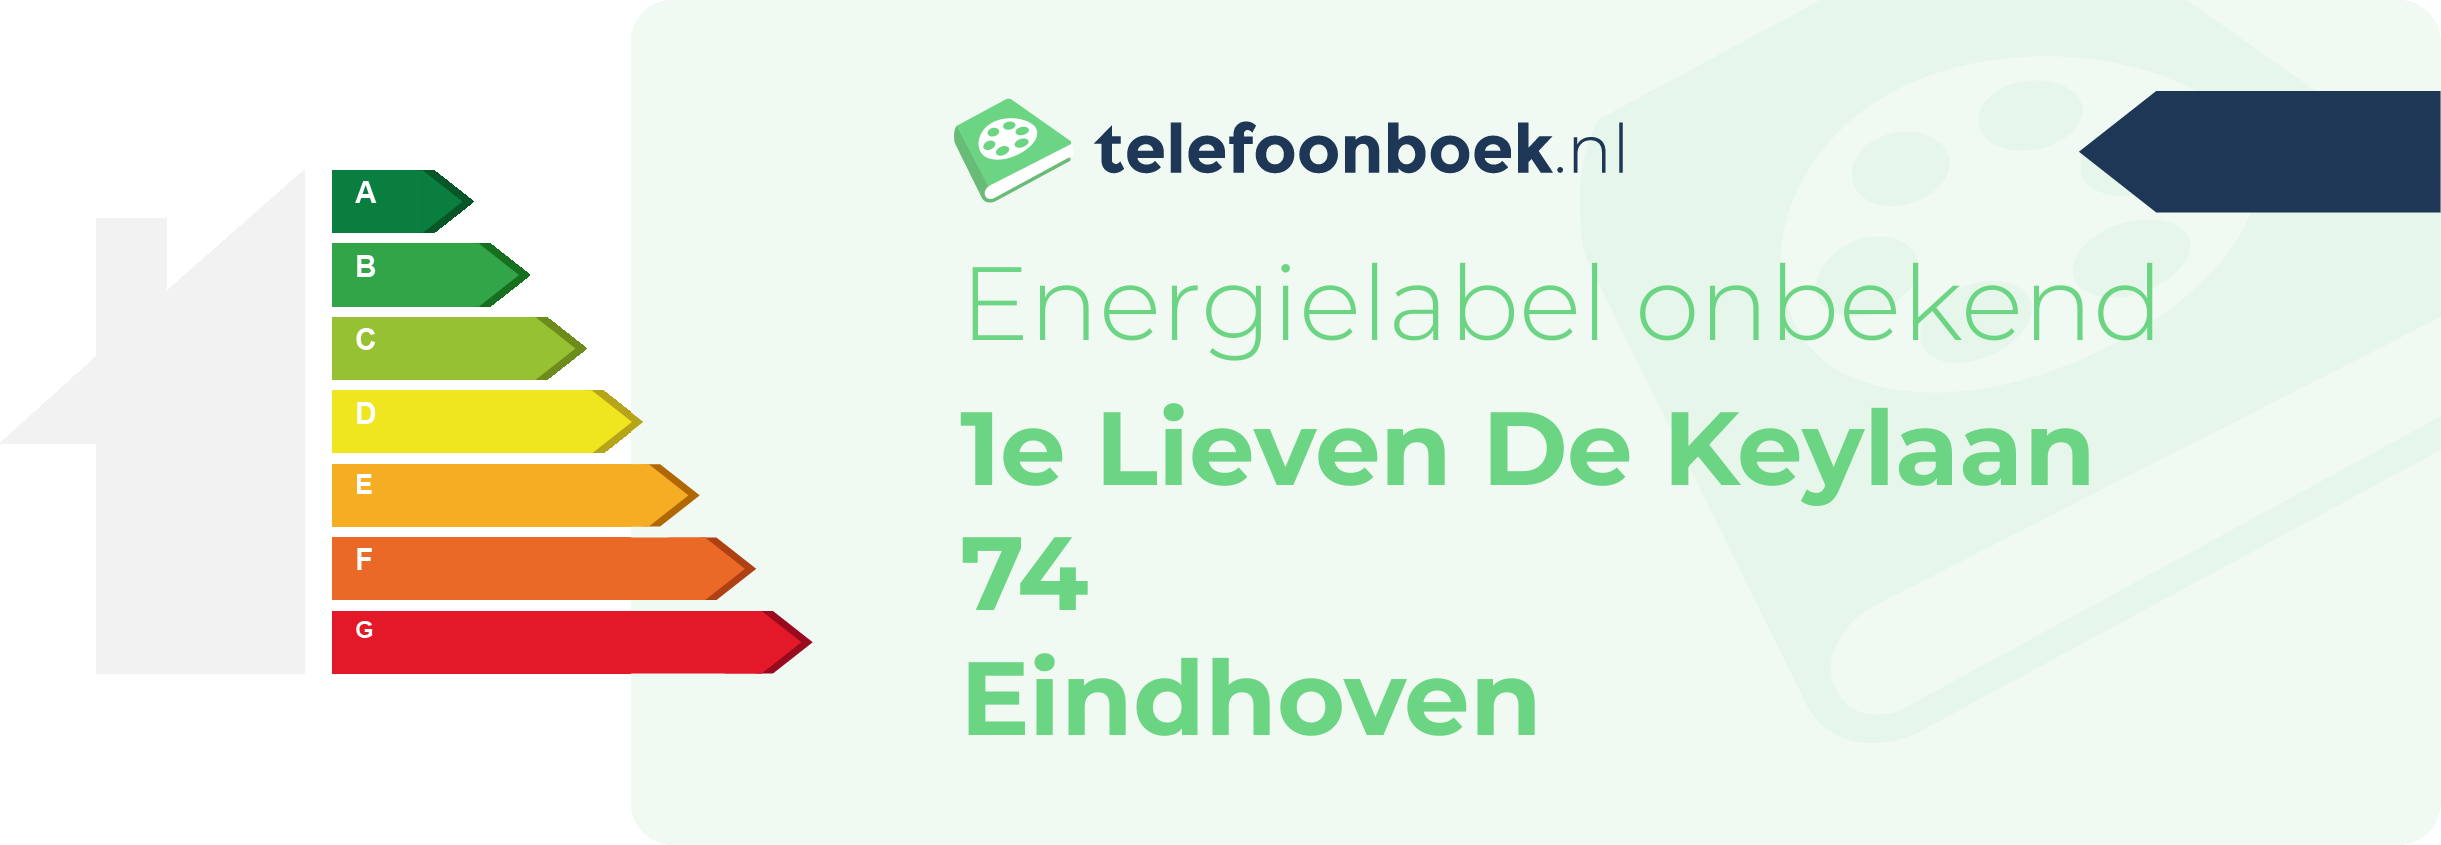 Energielabel 1e Lieven De Keylaan 74 Eindhoven